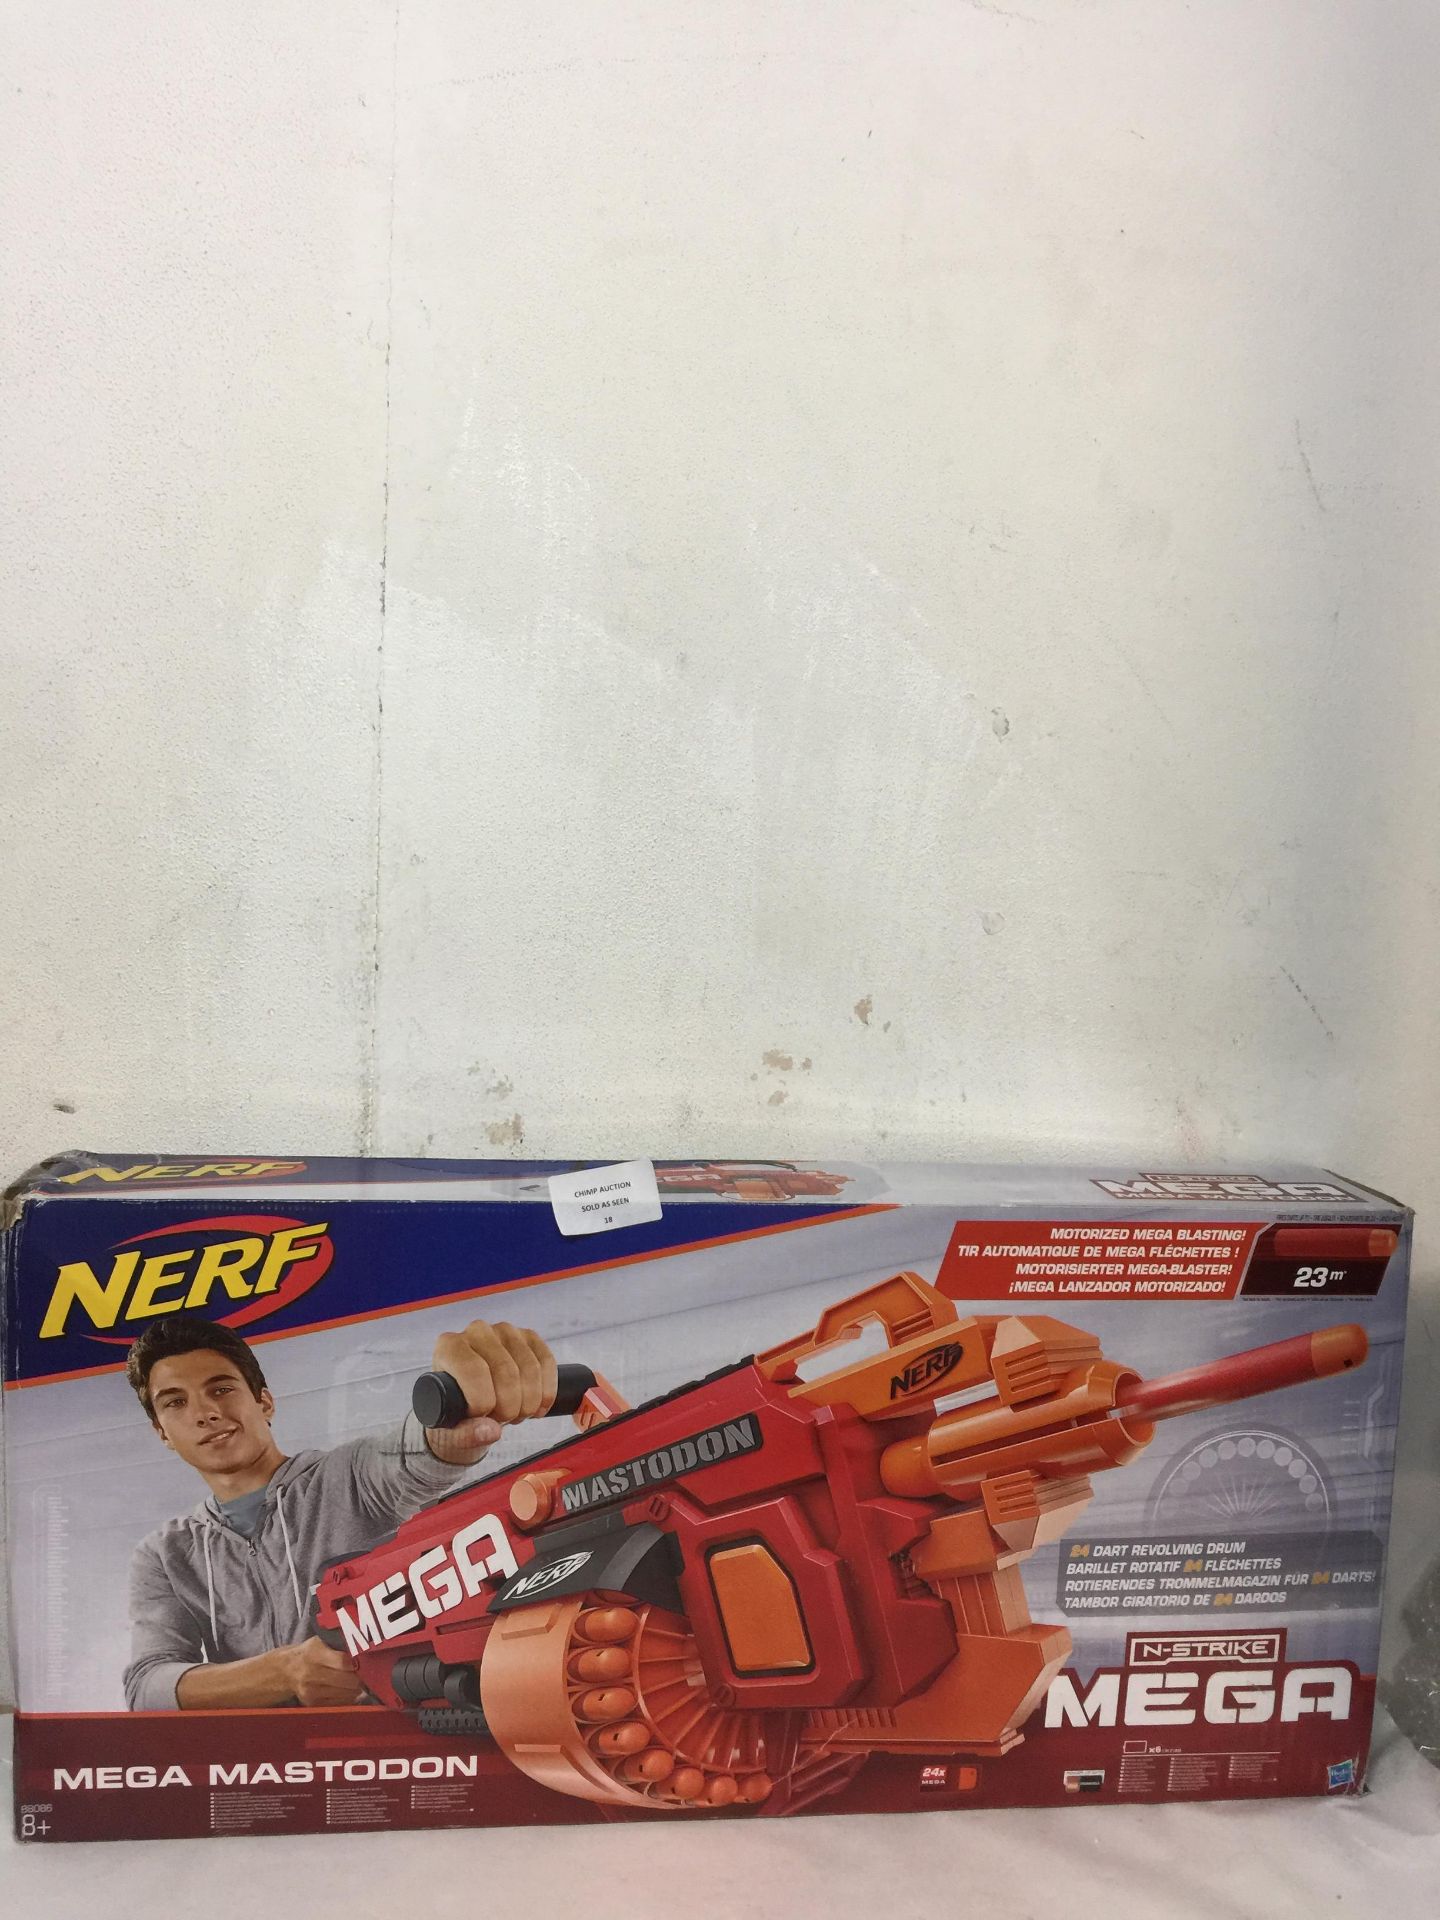 NERF N-Strike Mega Mastodon Blaster